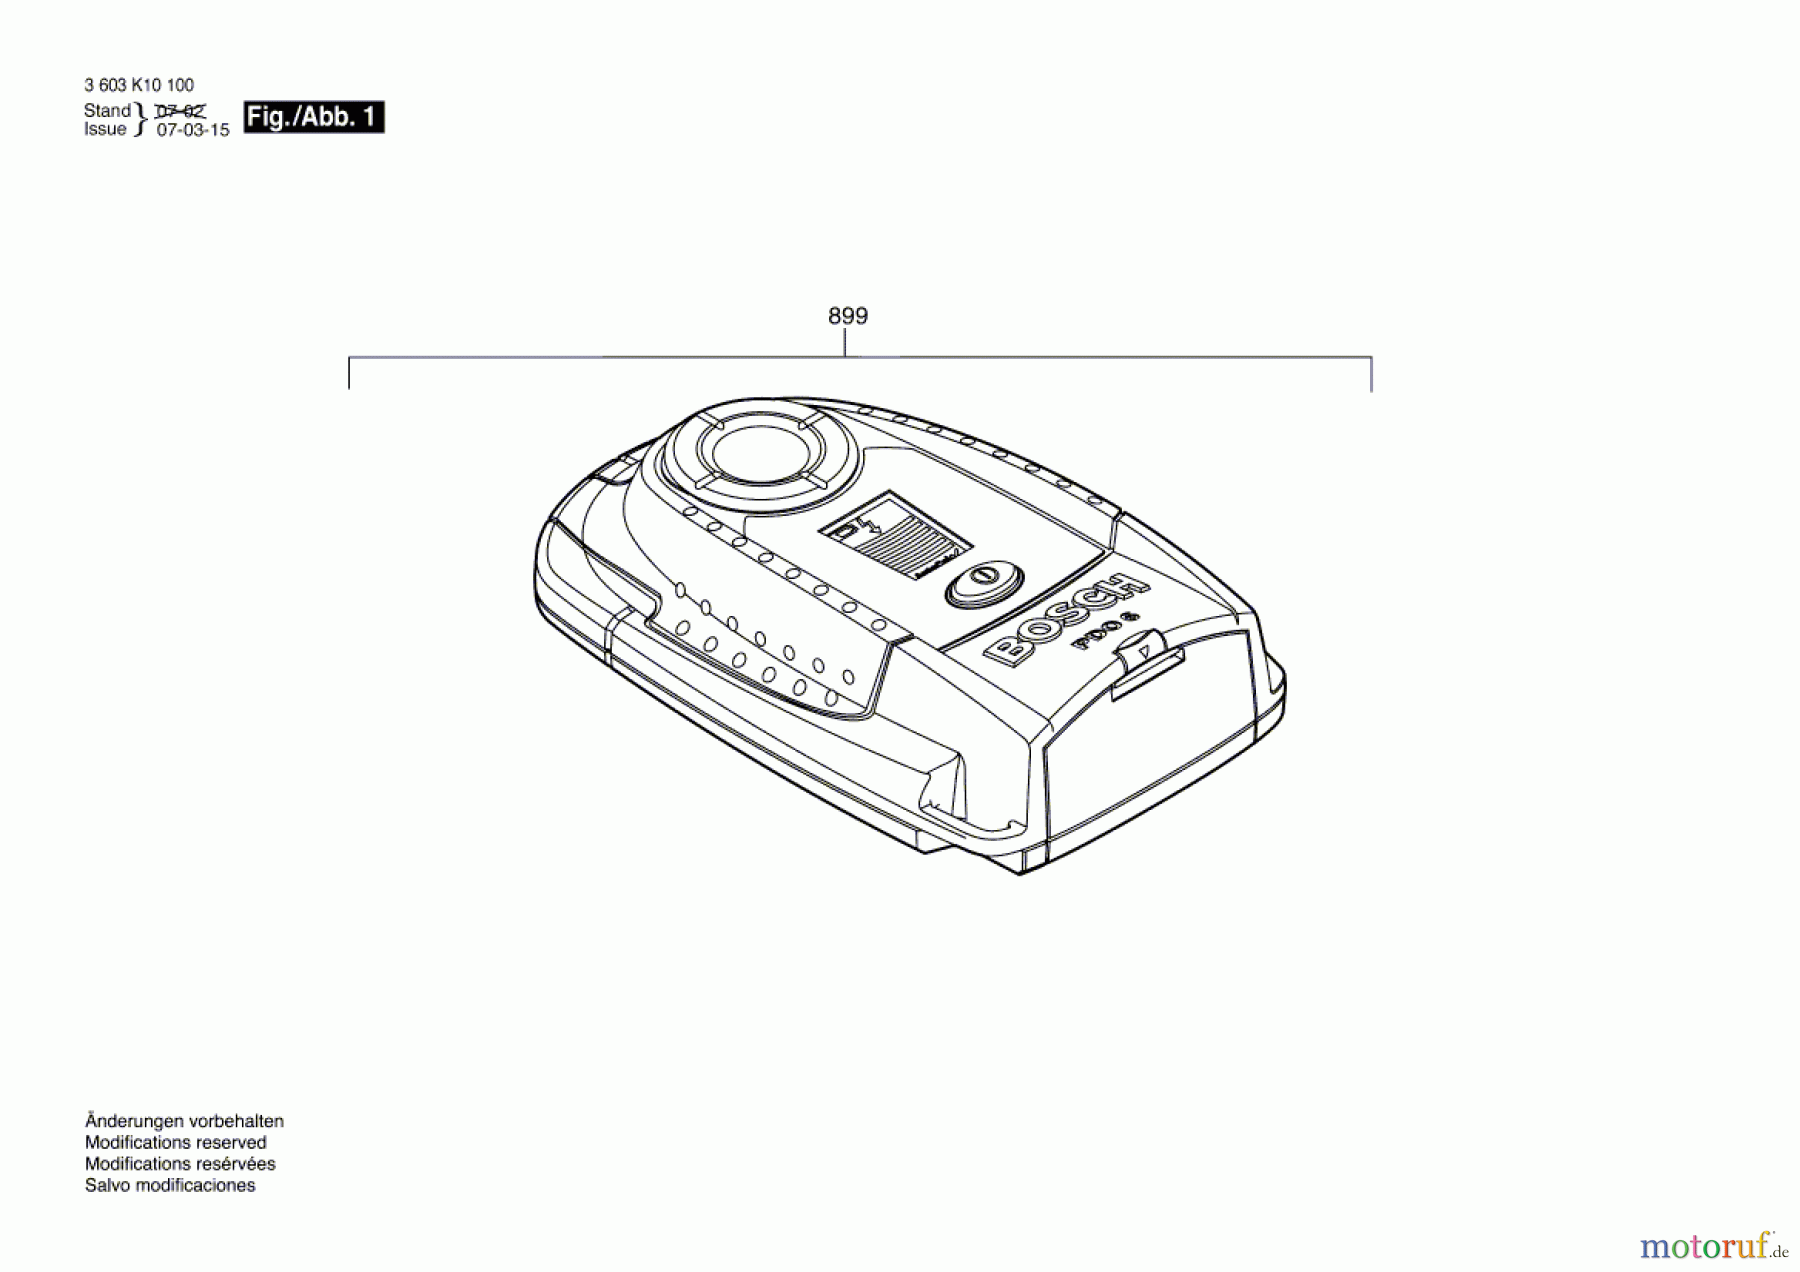  Bosch Werkzeug Universalortungsgerät PDO 6 Seite 1